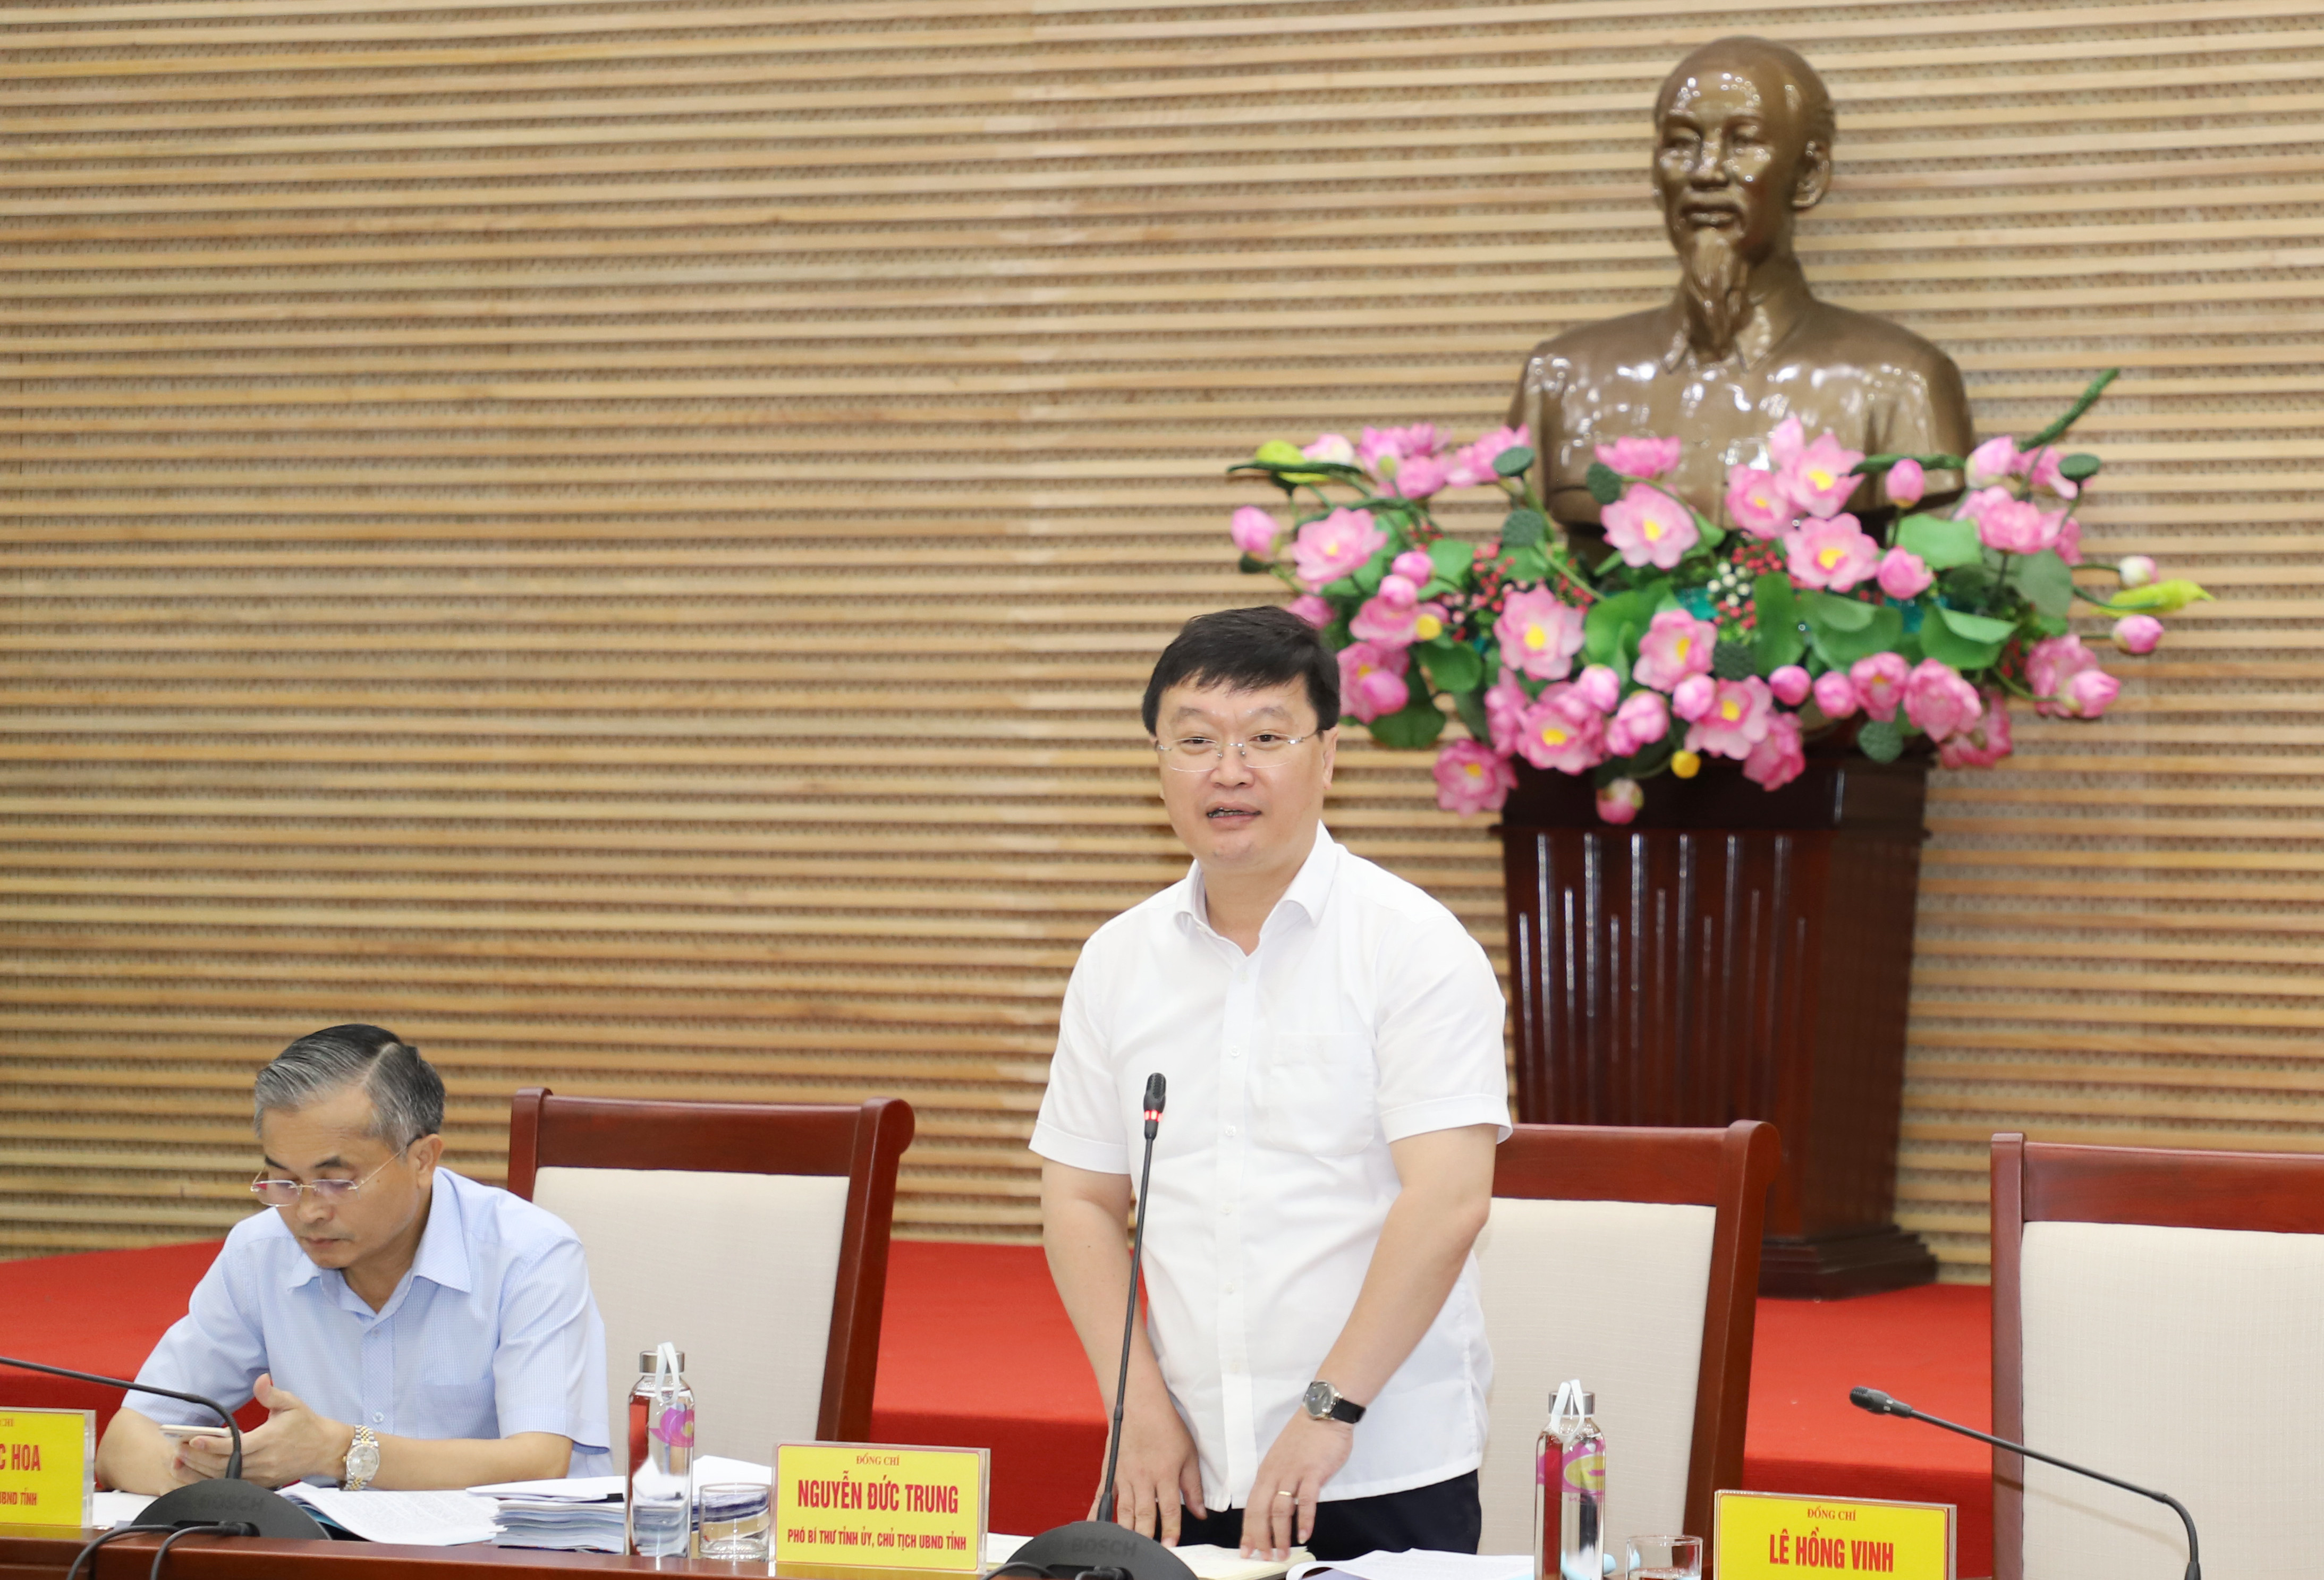 Đồng chí Nguyễn Đức Trung - Phó Bí thư Tỉnh ủy, Chủ tịch UBND tỉnh chủ trì phiên họp chuyên đề tháng 6. Ảnh: Phạm Bằng